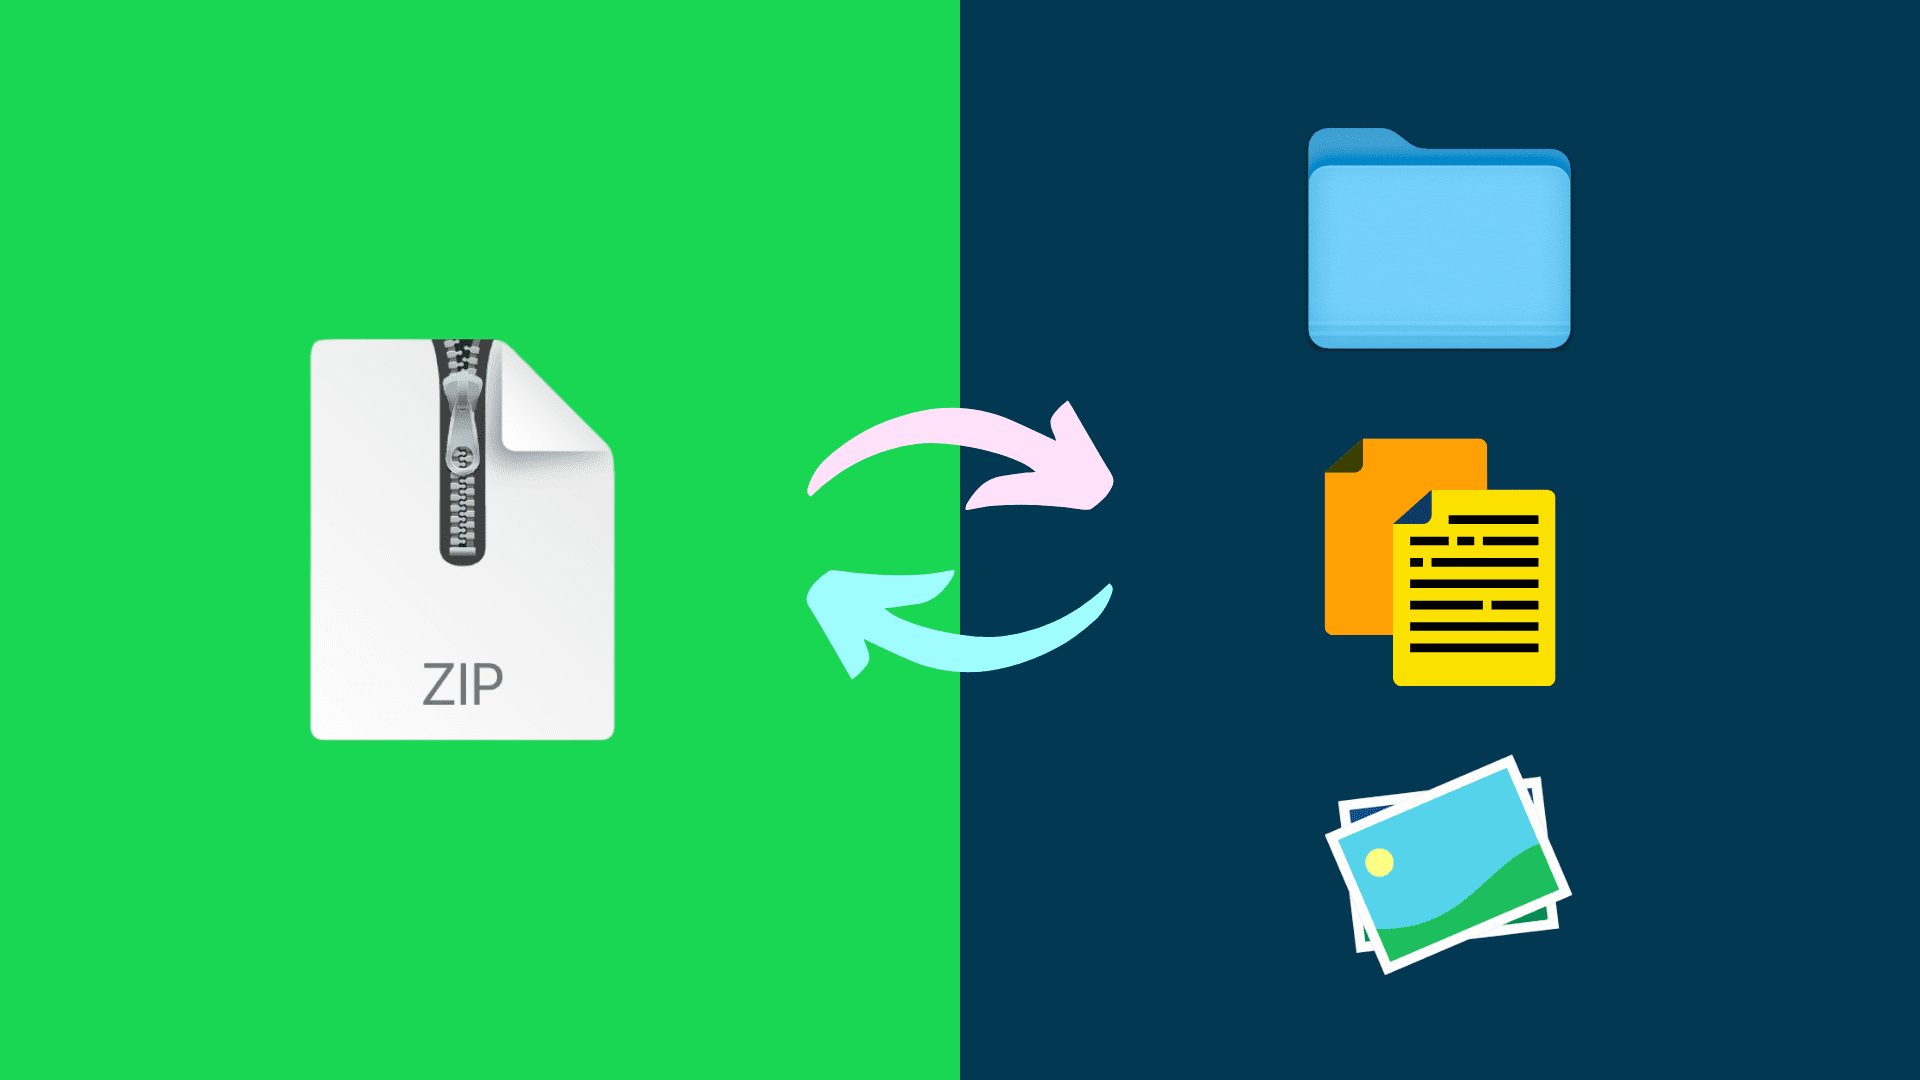 Zip and unzip files